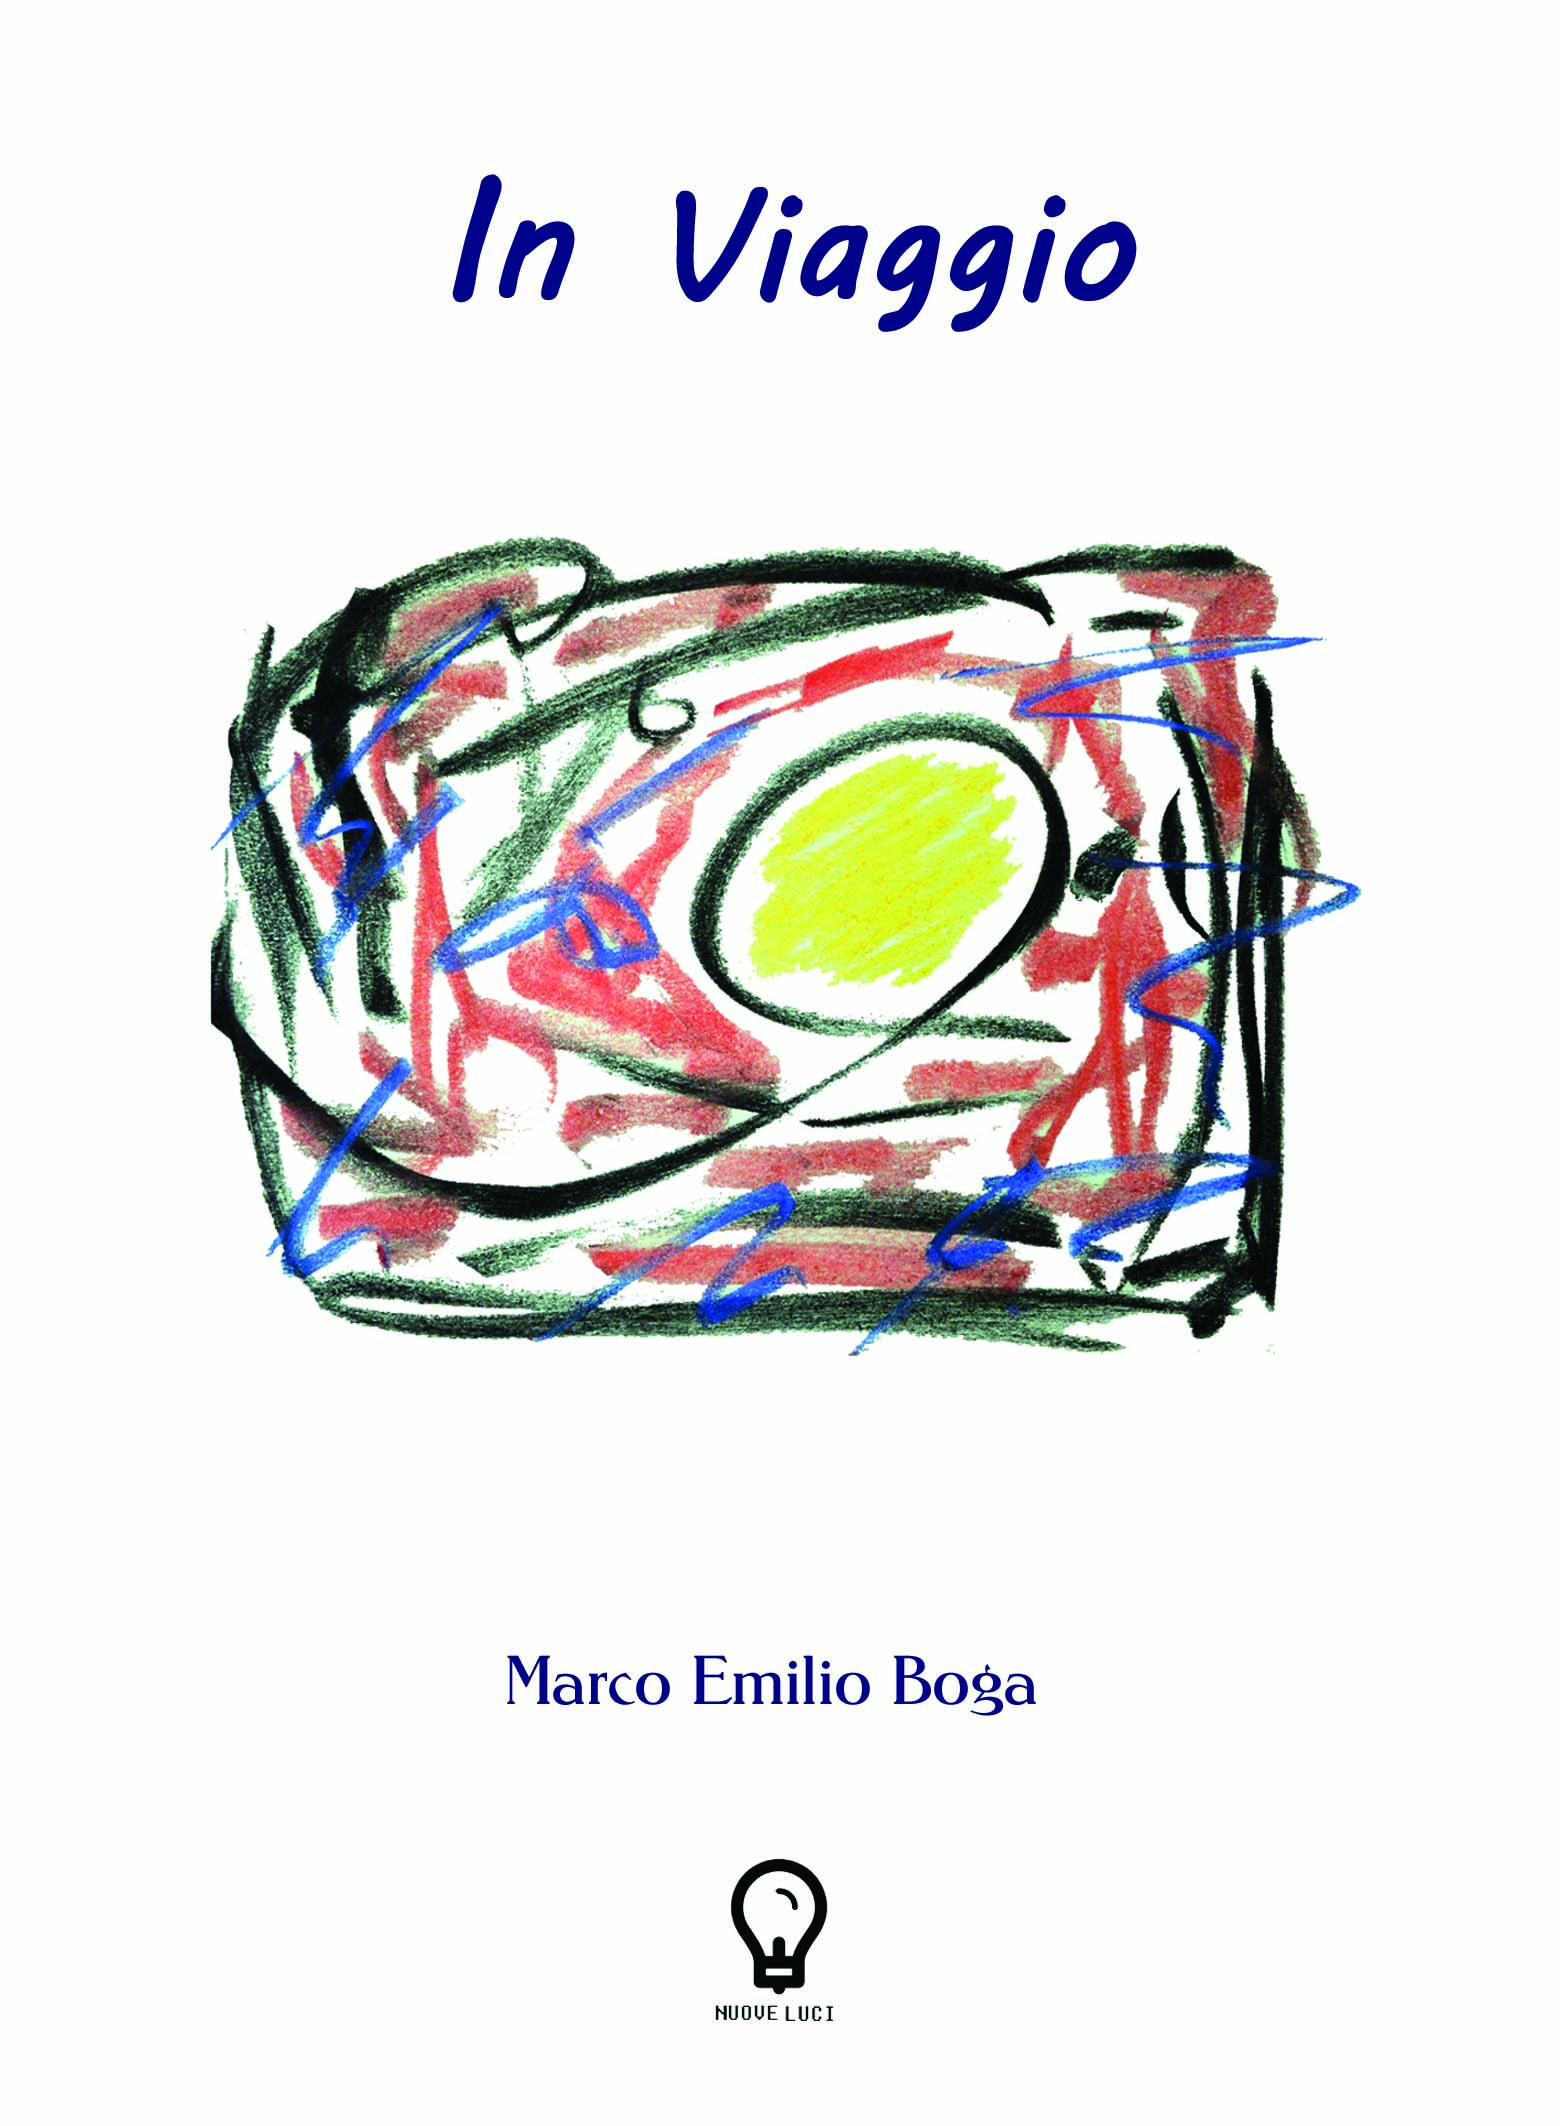 Marco Emilio Boga: "In viaggio"